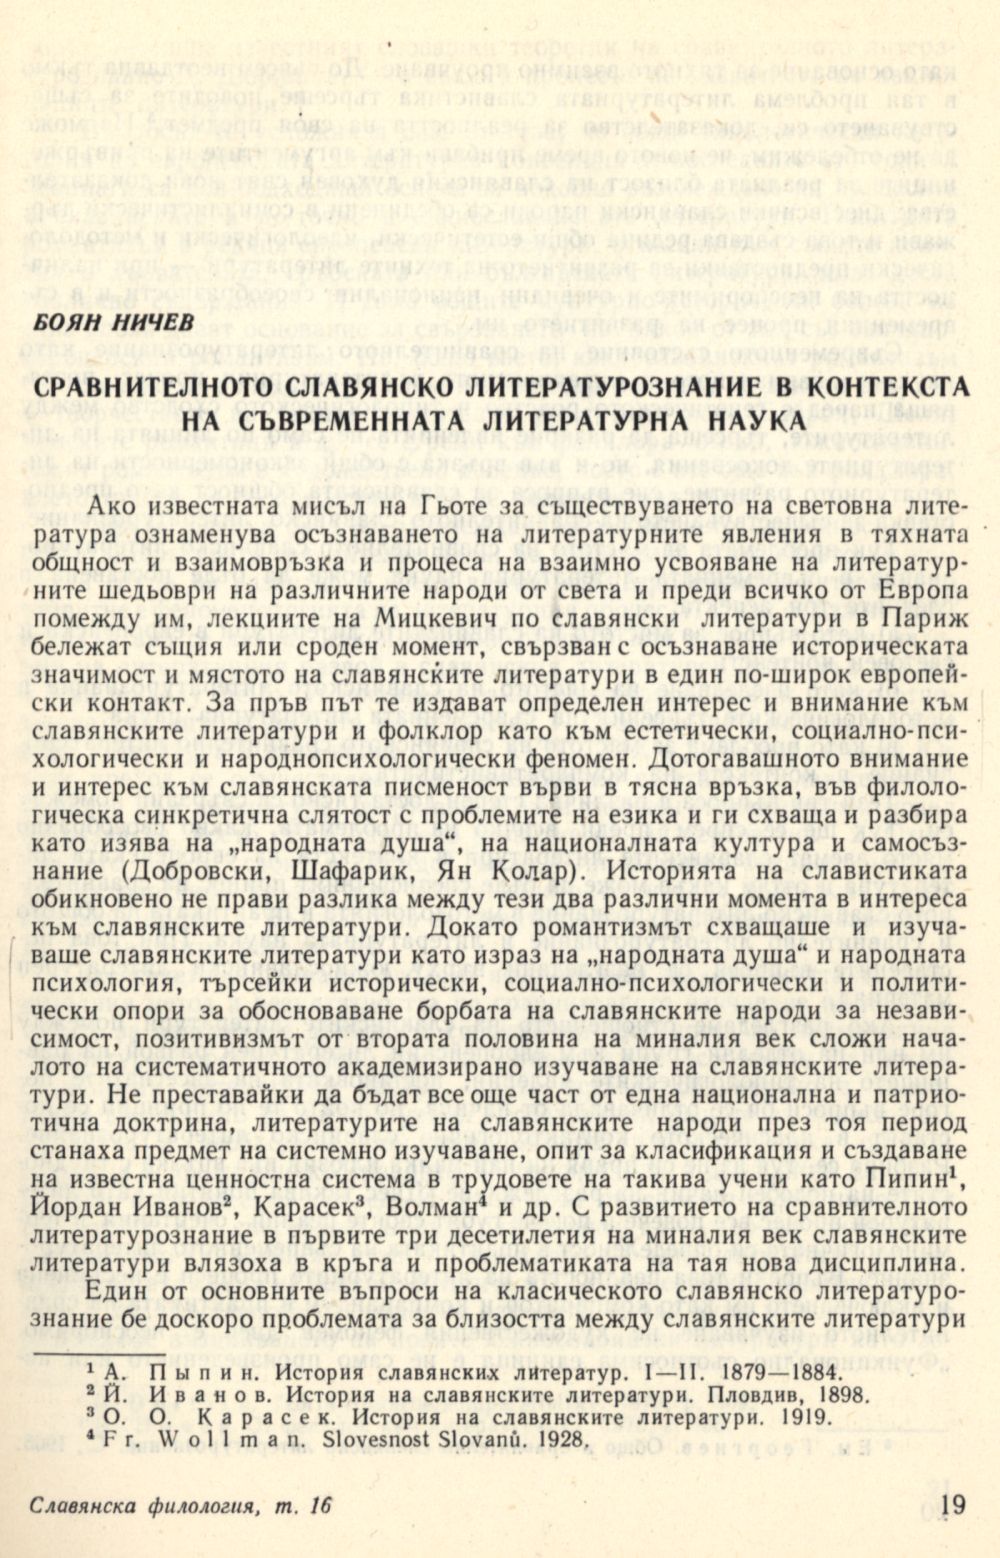 Сравнителното славянско литературознание в контекста на съвременната литературна наука